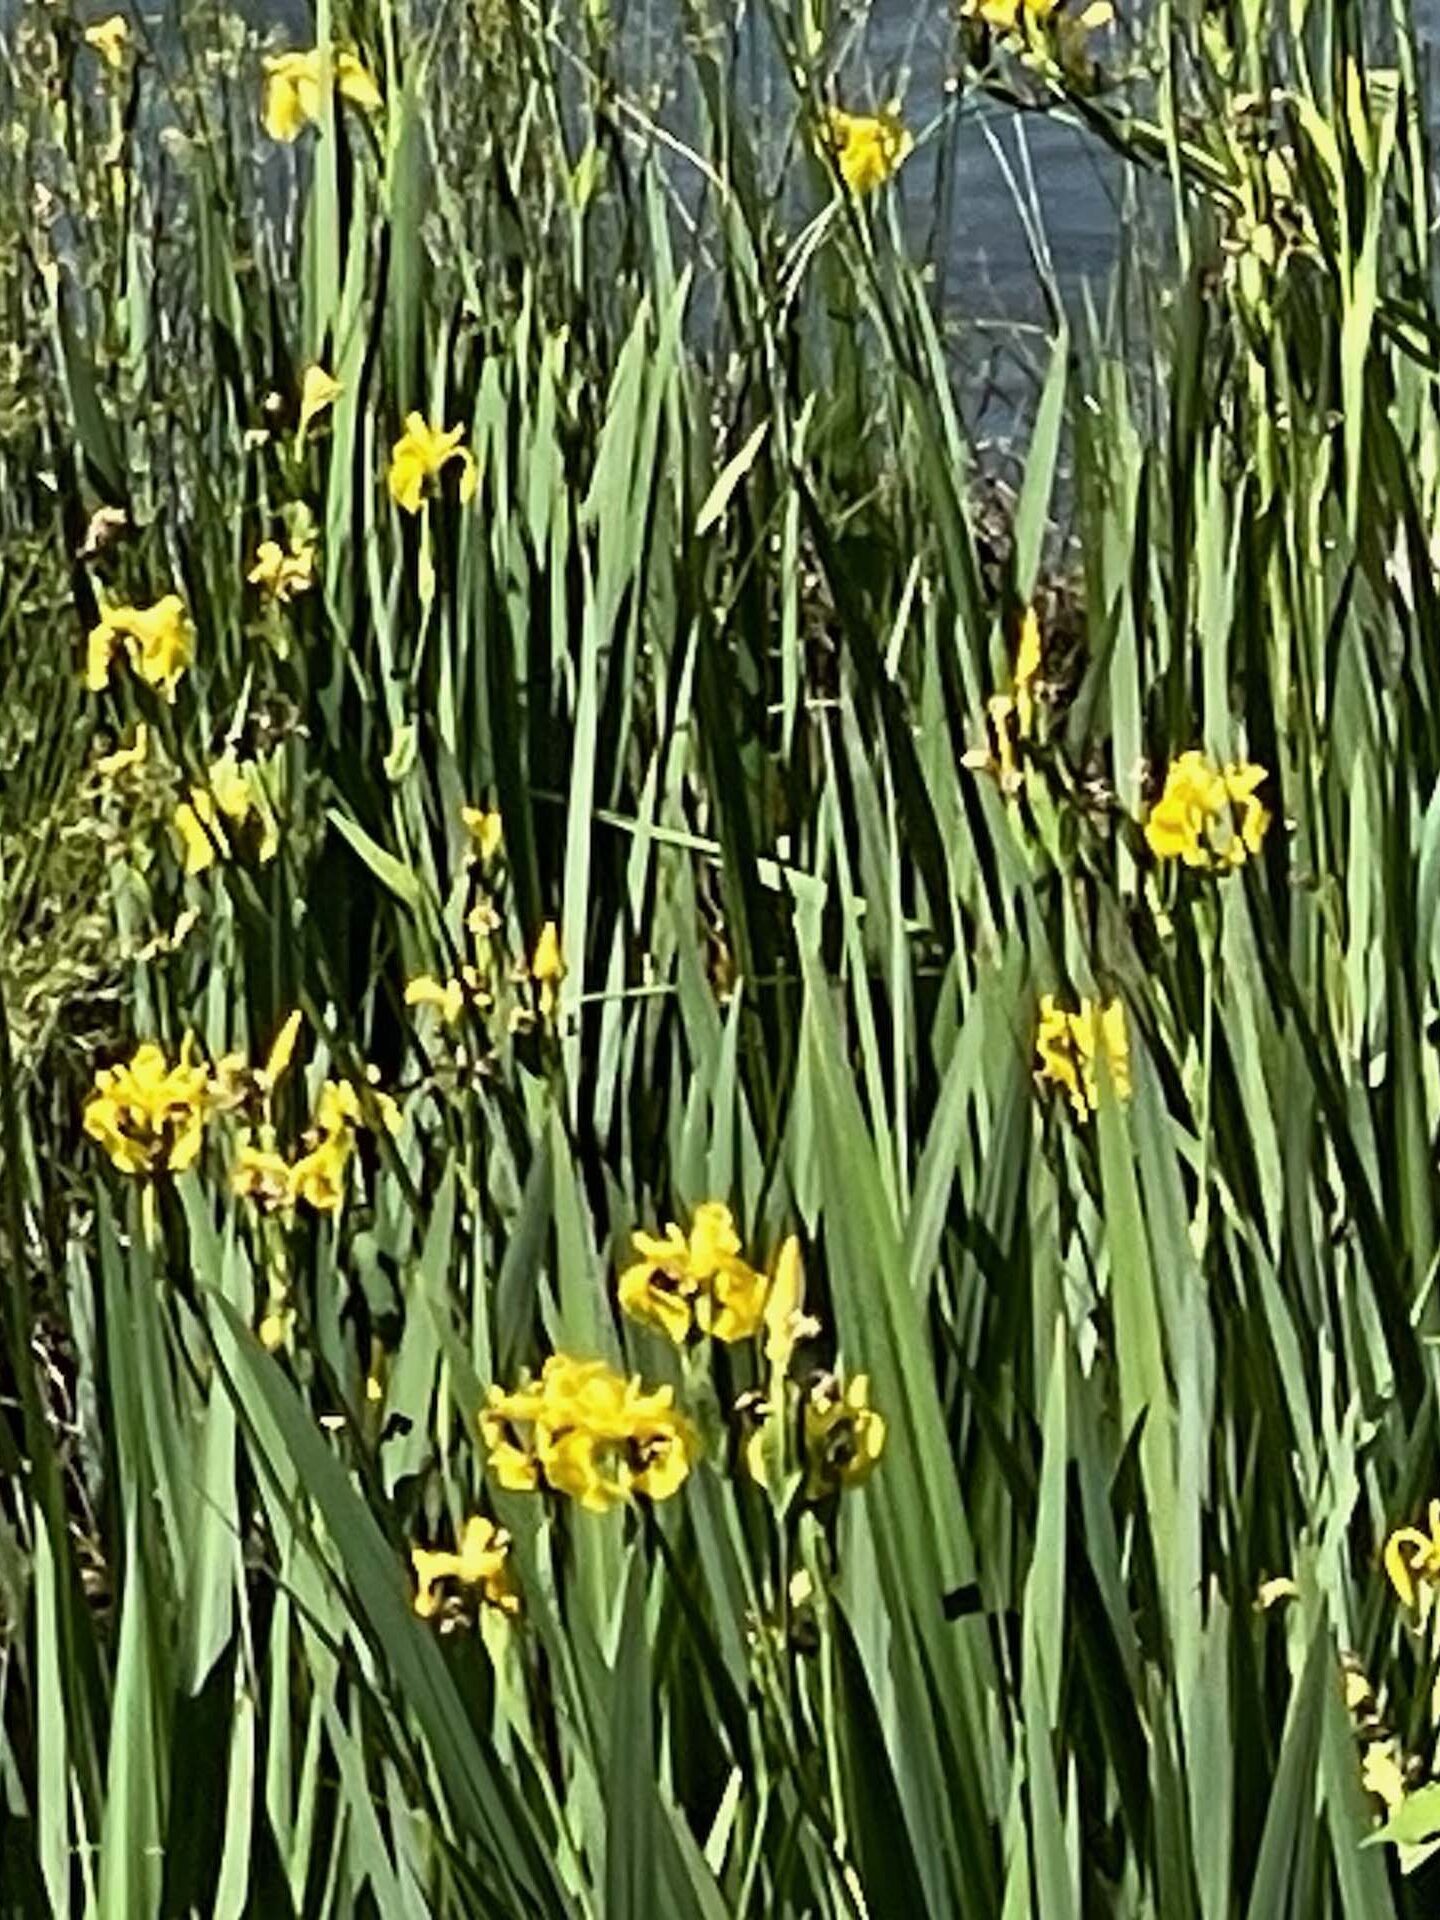 Yellow water iris. C. Harvey.